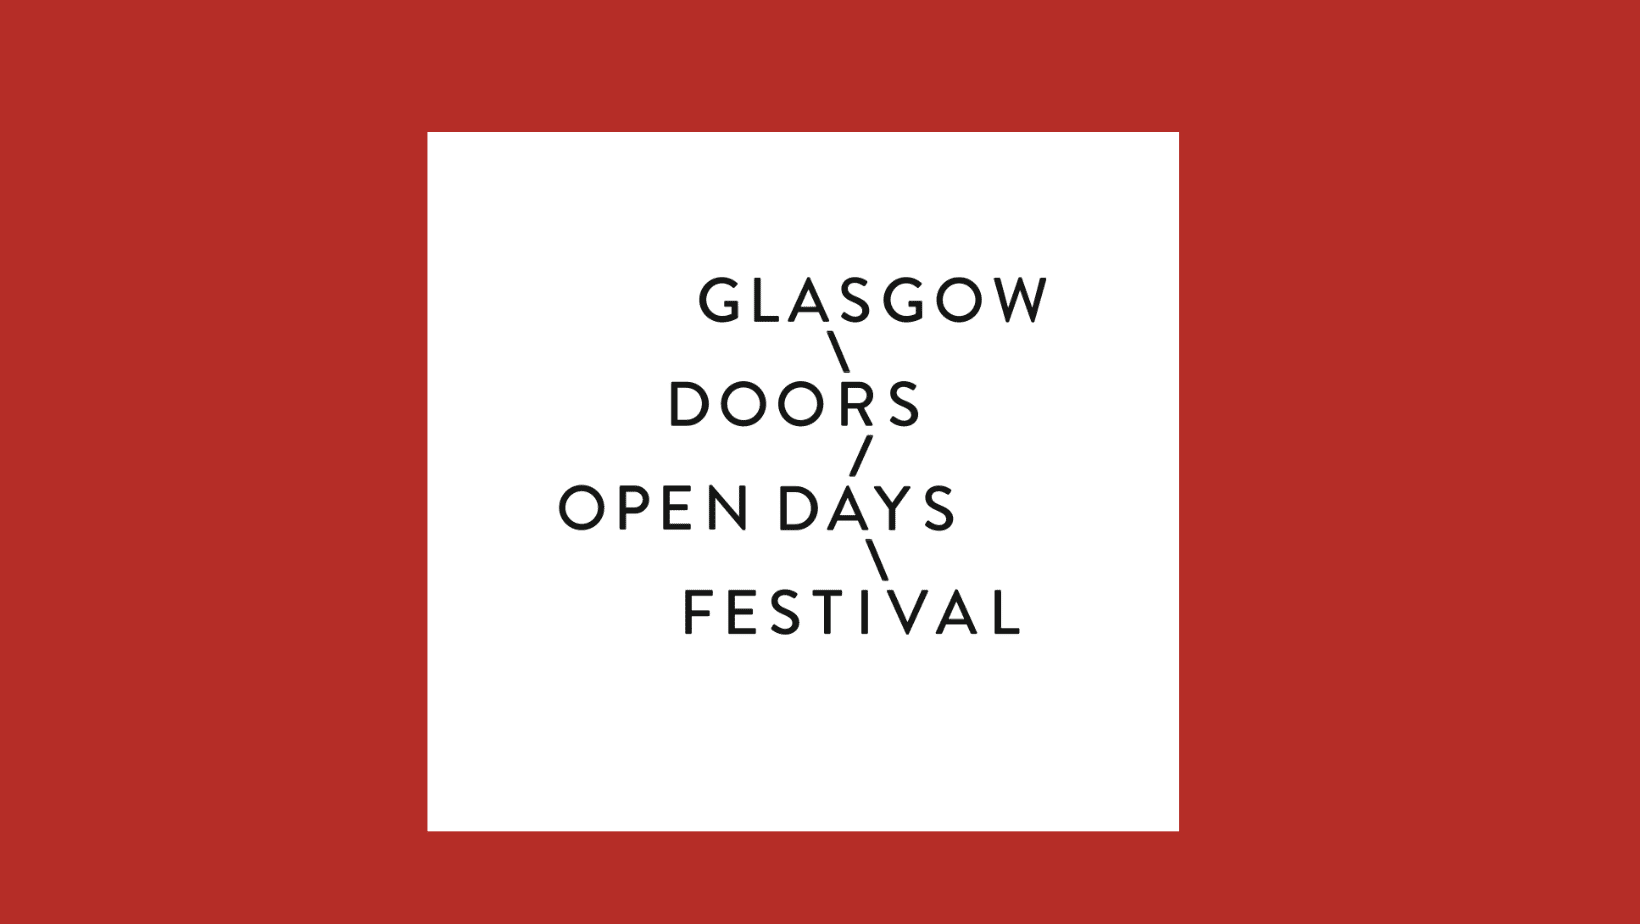 The logo for Glasgow Doors Open Day Festival